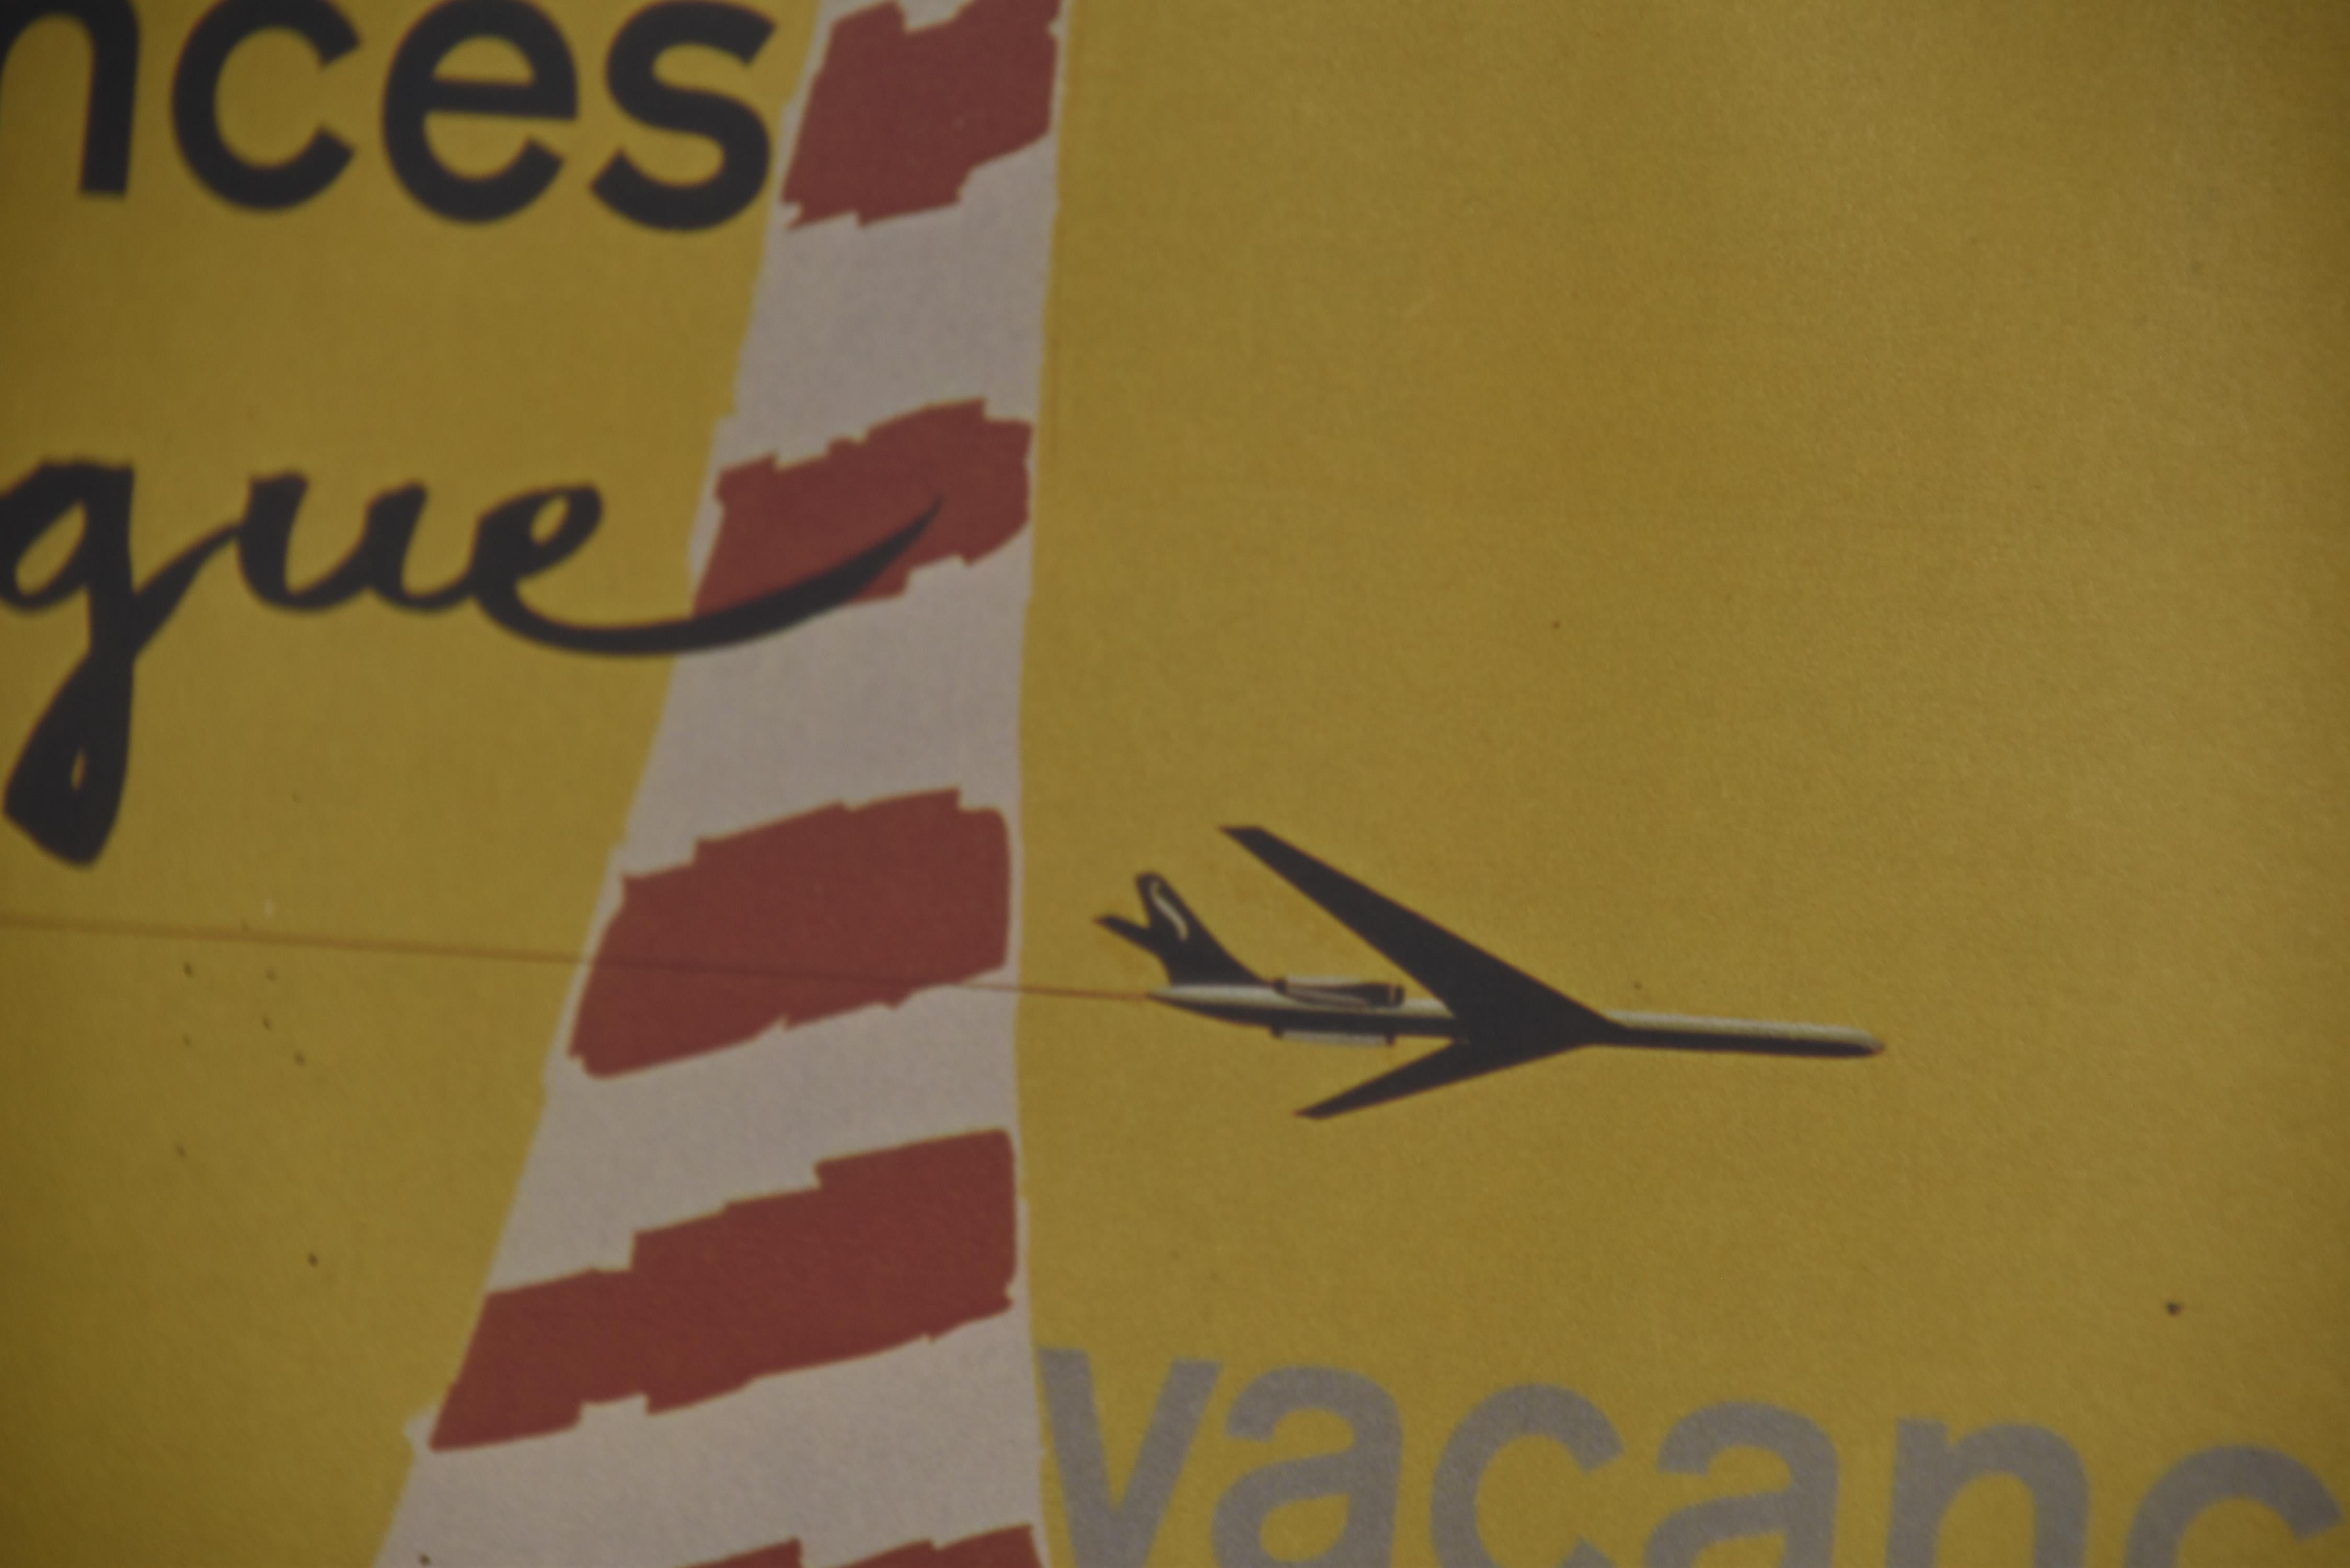 Vintage-Werbeplakat für die belgische Fluggesellschaft Sabena.

1960er Jahre - Belgien

Höhe: 52cm/20.47